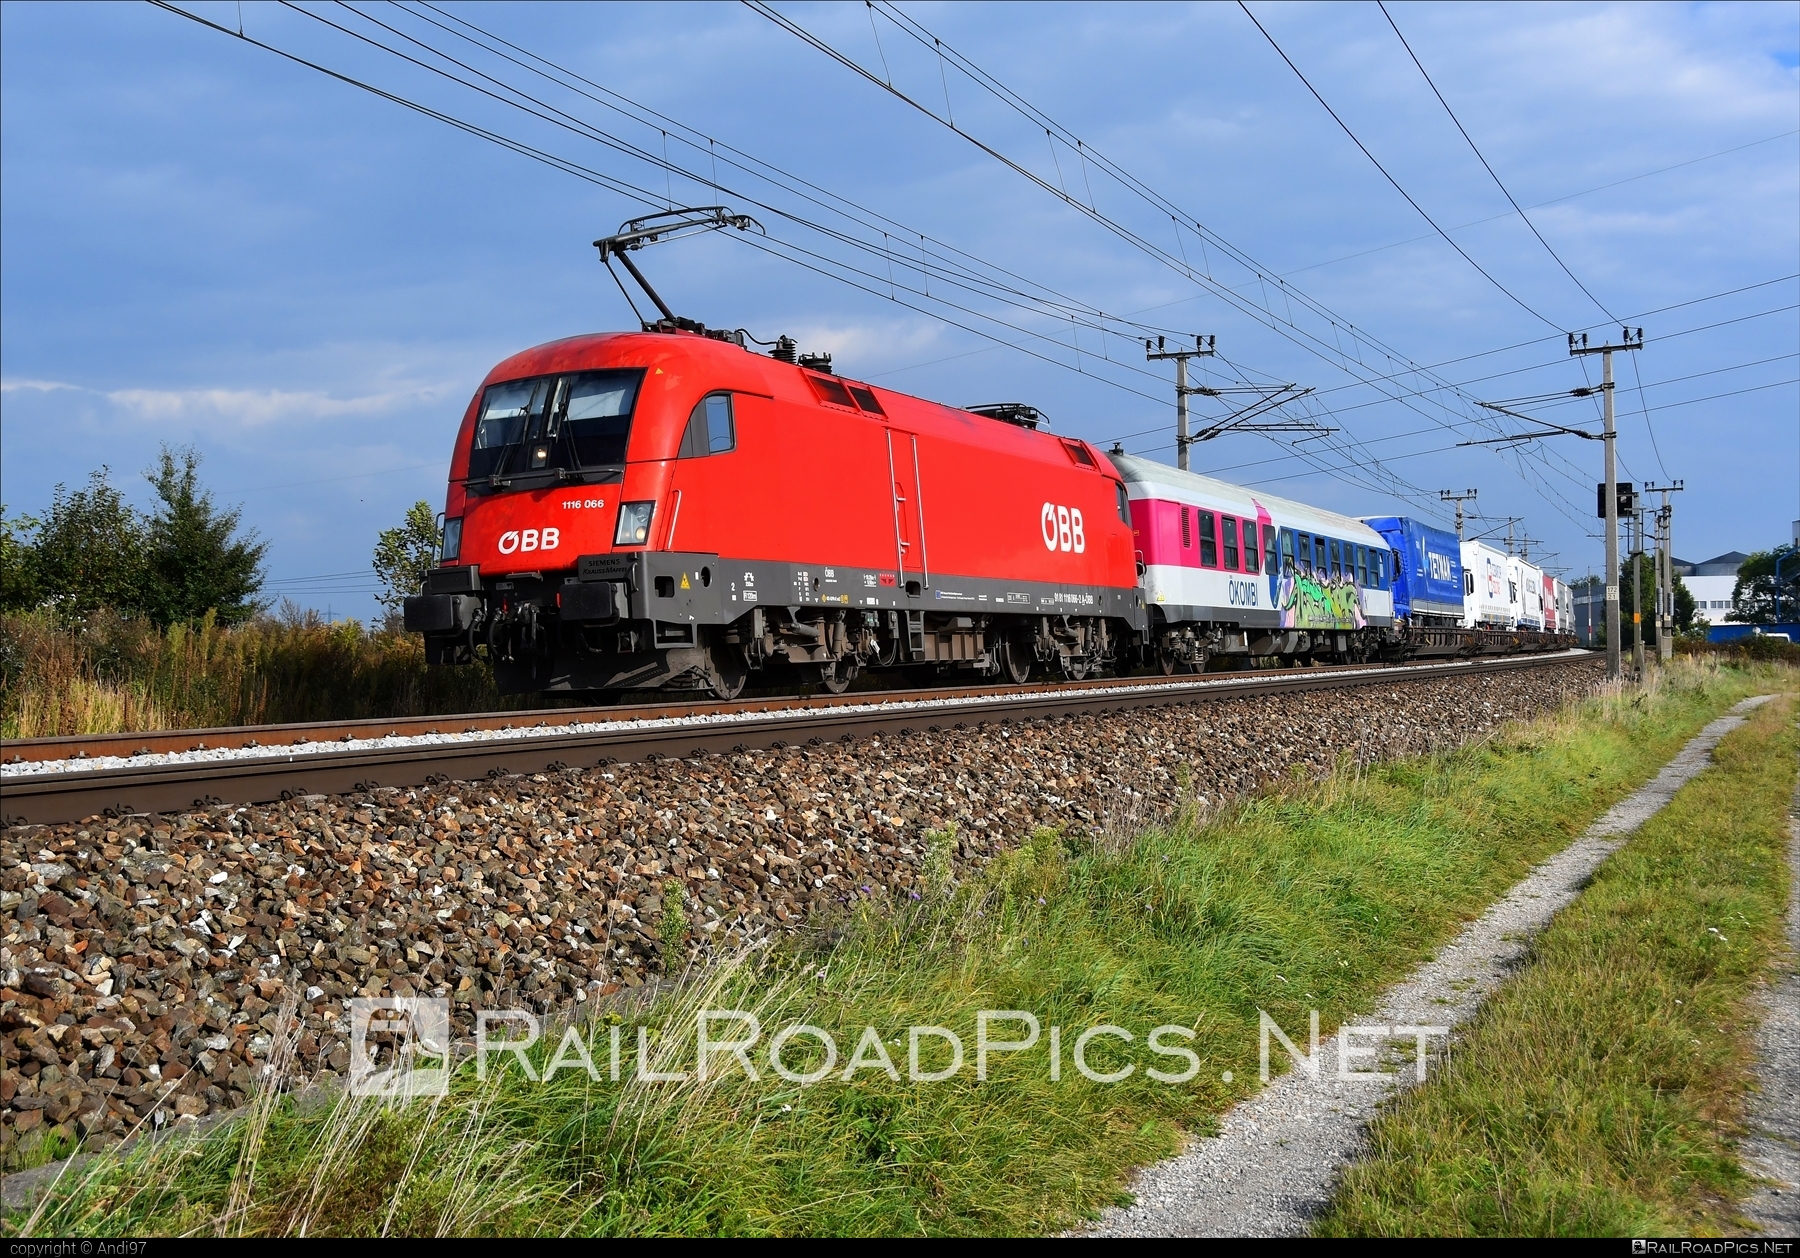 Siemens ES 64 U2 - 1116 066 operated by Rail Cargo Austria AG #es64 #es64u2 #eurosprinter #flatwagon #graffiti #obb #osterreichischebundesbahnen #rcw #siemens #siemensEs64 #siemensEs64u2 #siemenstaurus #taurus #tauruslocomotive #truck